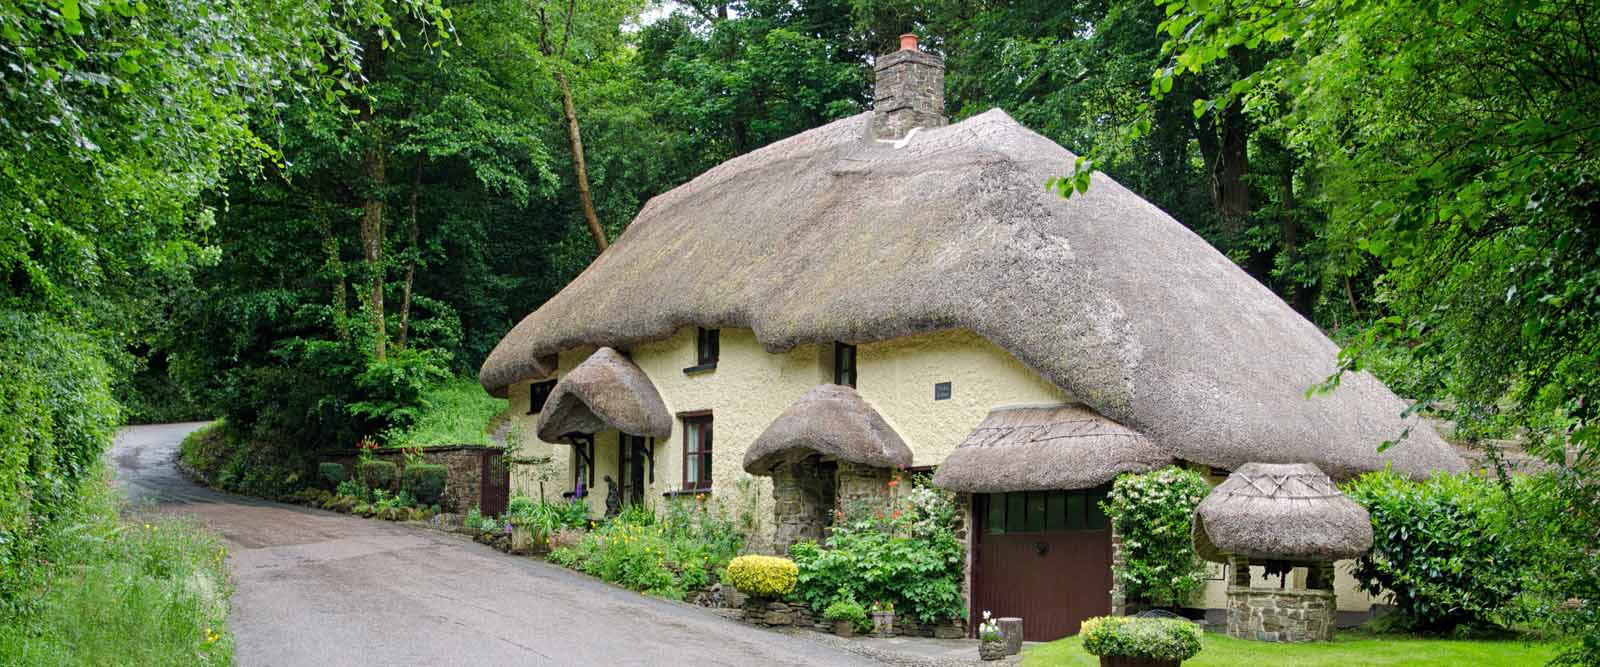 Thatched cottage in mid Devon